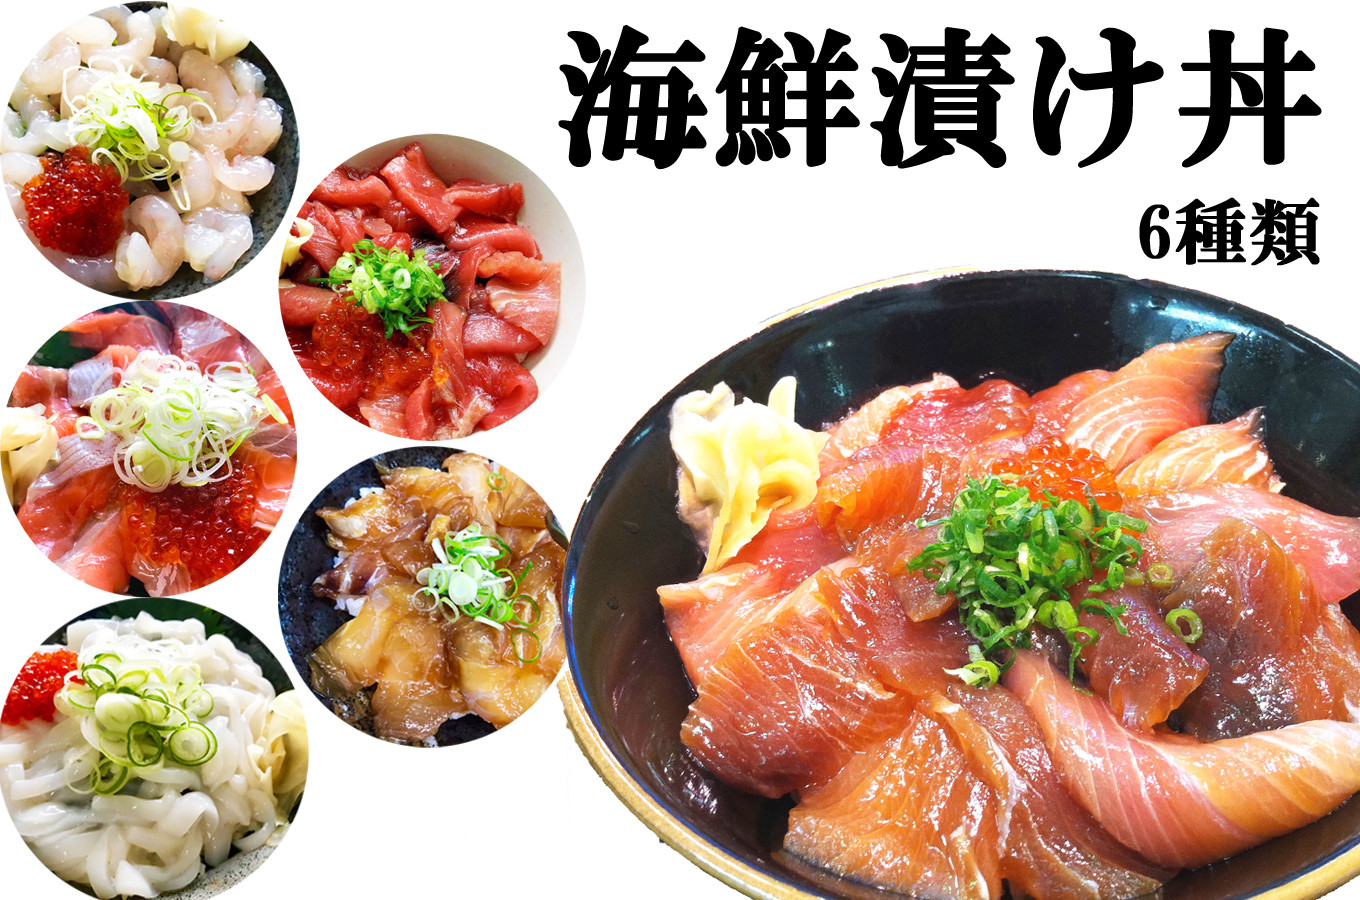 鳥取県日吉津村の 鳥取の海鮮 漬け丼の素６種類 アツアツご飯と一緒にどうぞ ふるさとチョイス ふるさと納税サイト